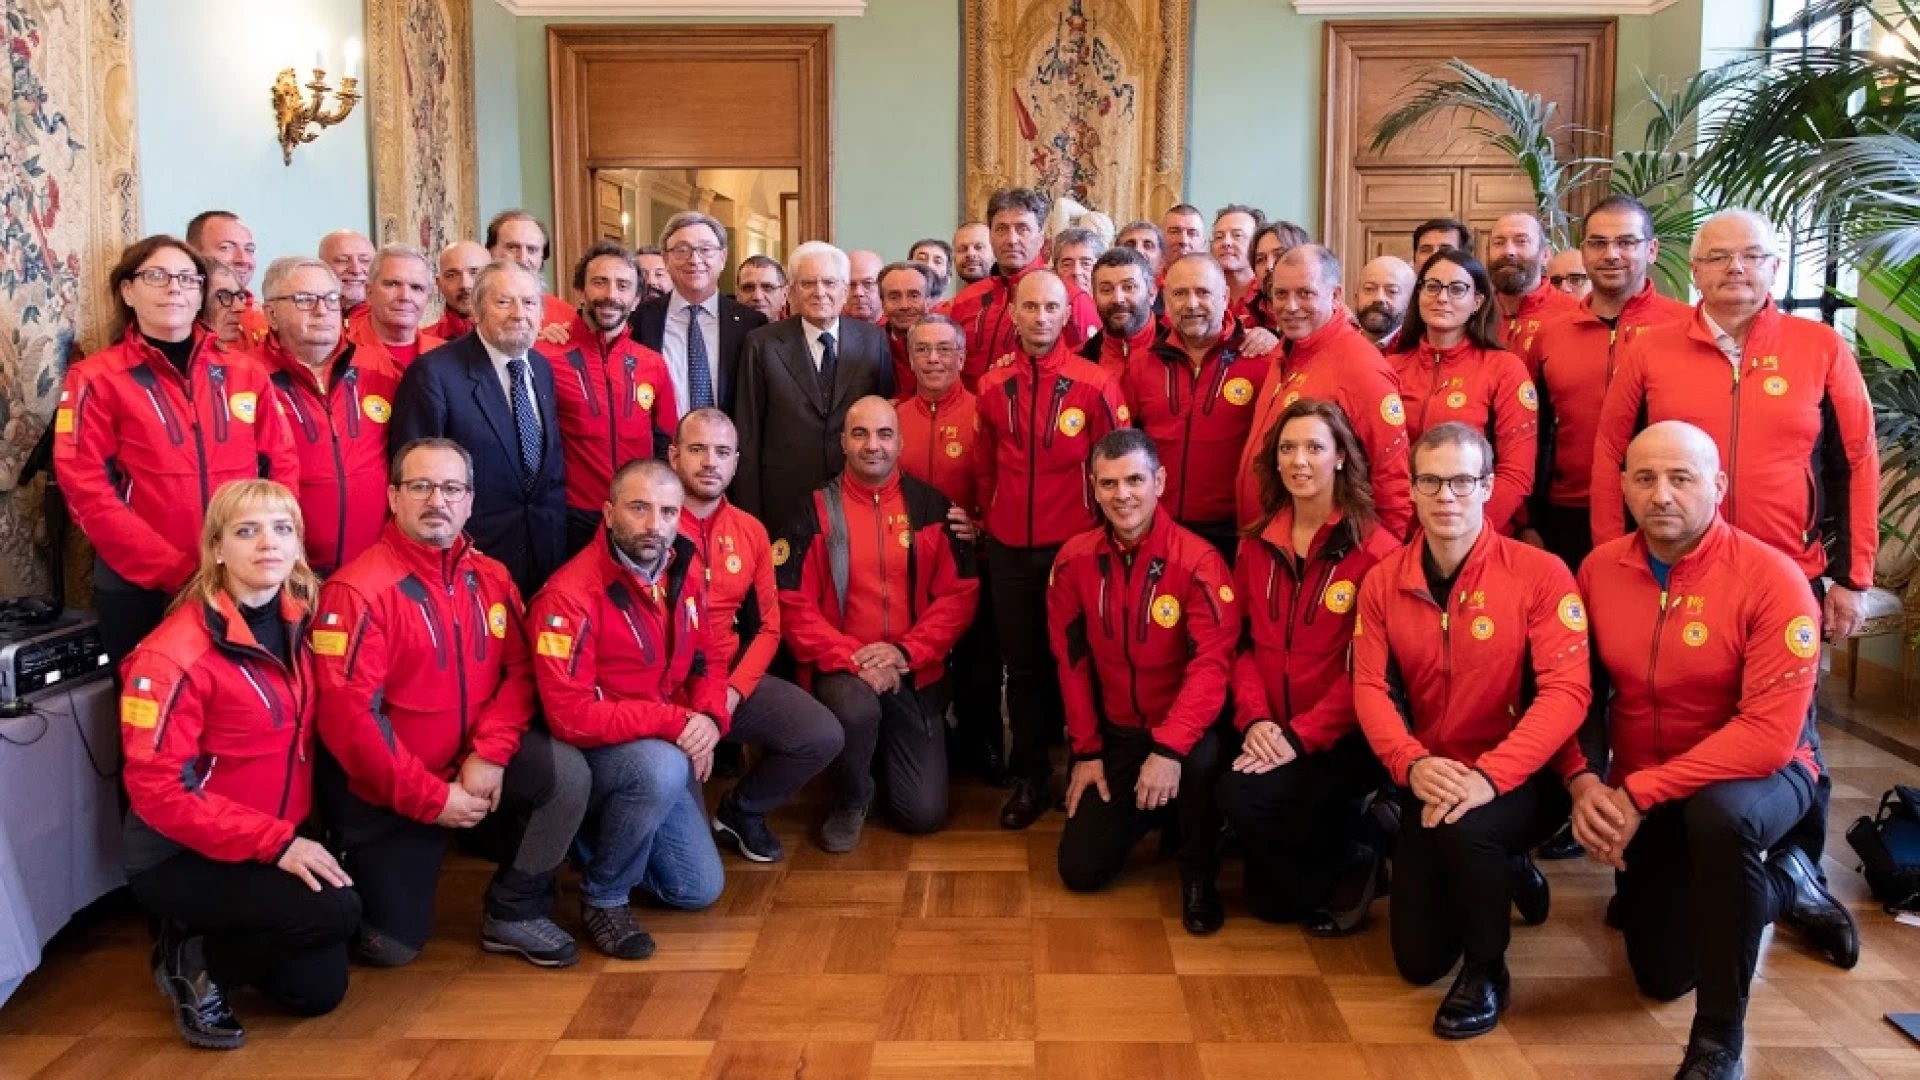 Il Presidente della Repubblica incontra il Soccorso Alpino e Speleologico: l’incontro al Quirinale per i 65 anni del Corpo